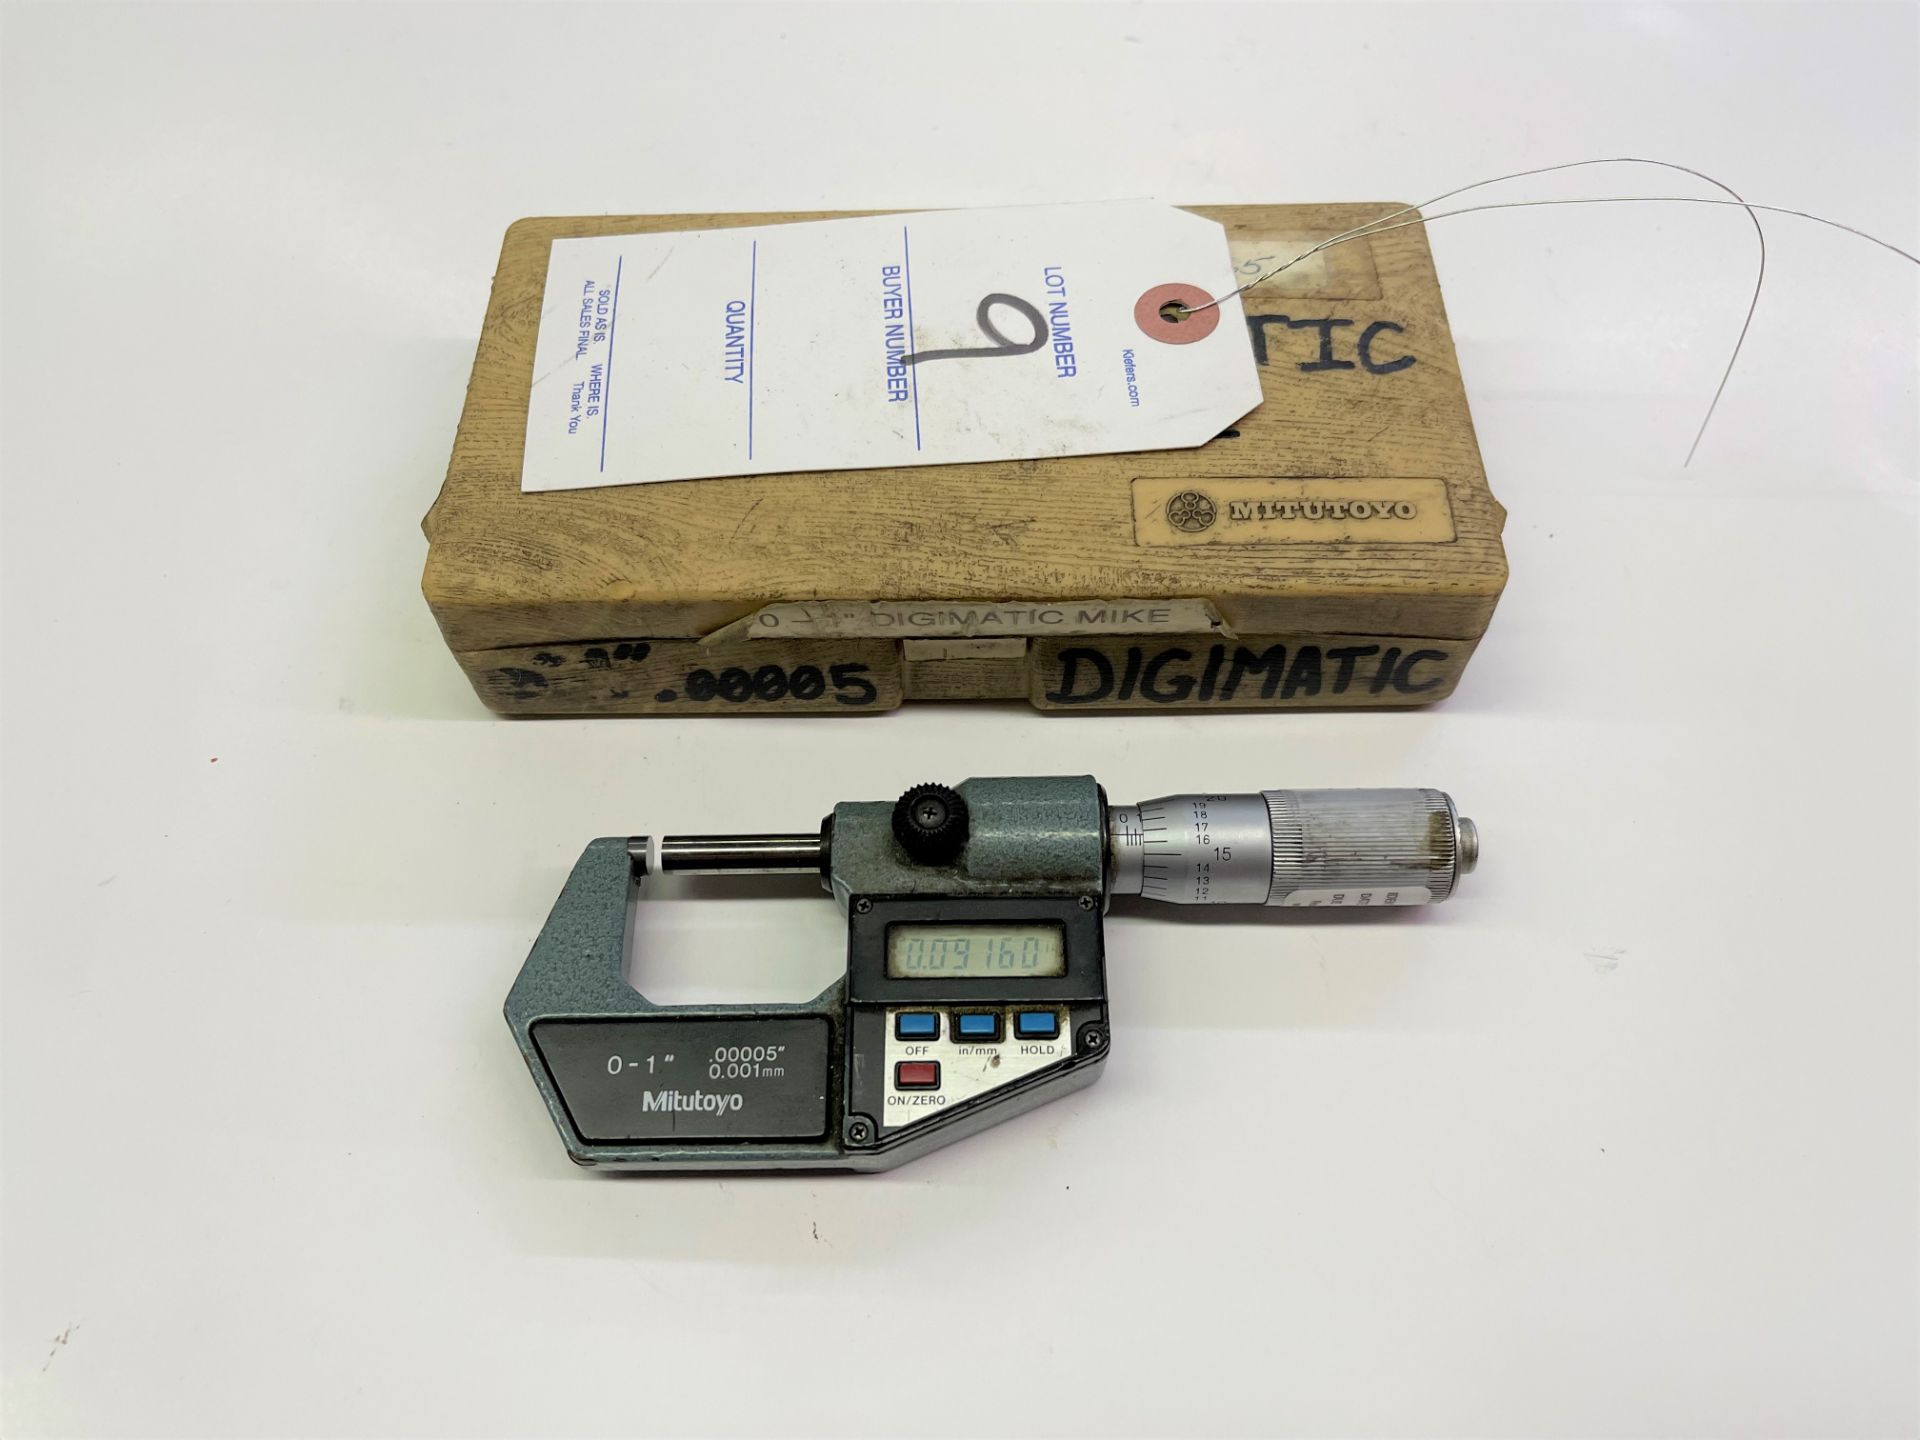 Mitutoyo 0"-1" Digimatic Micrometer